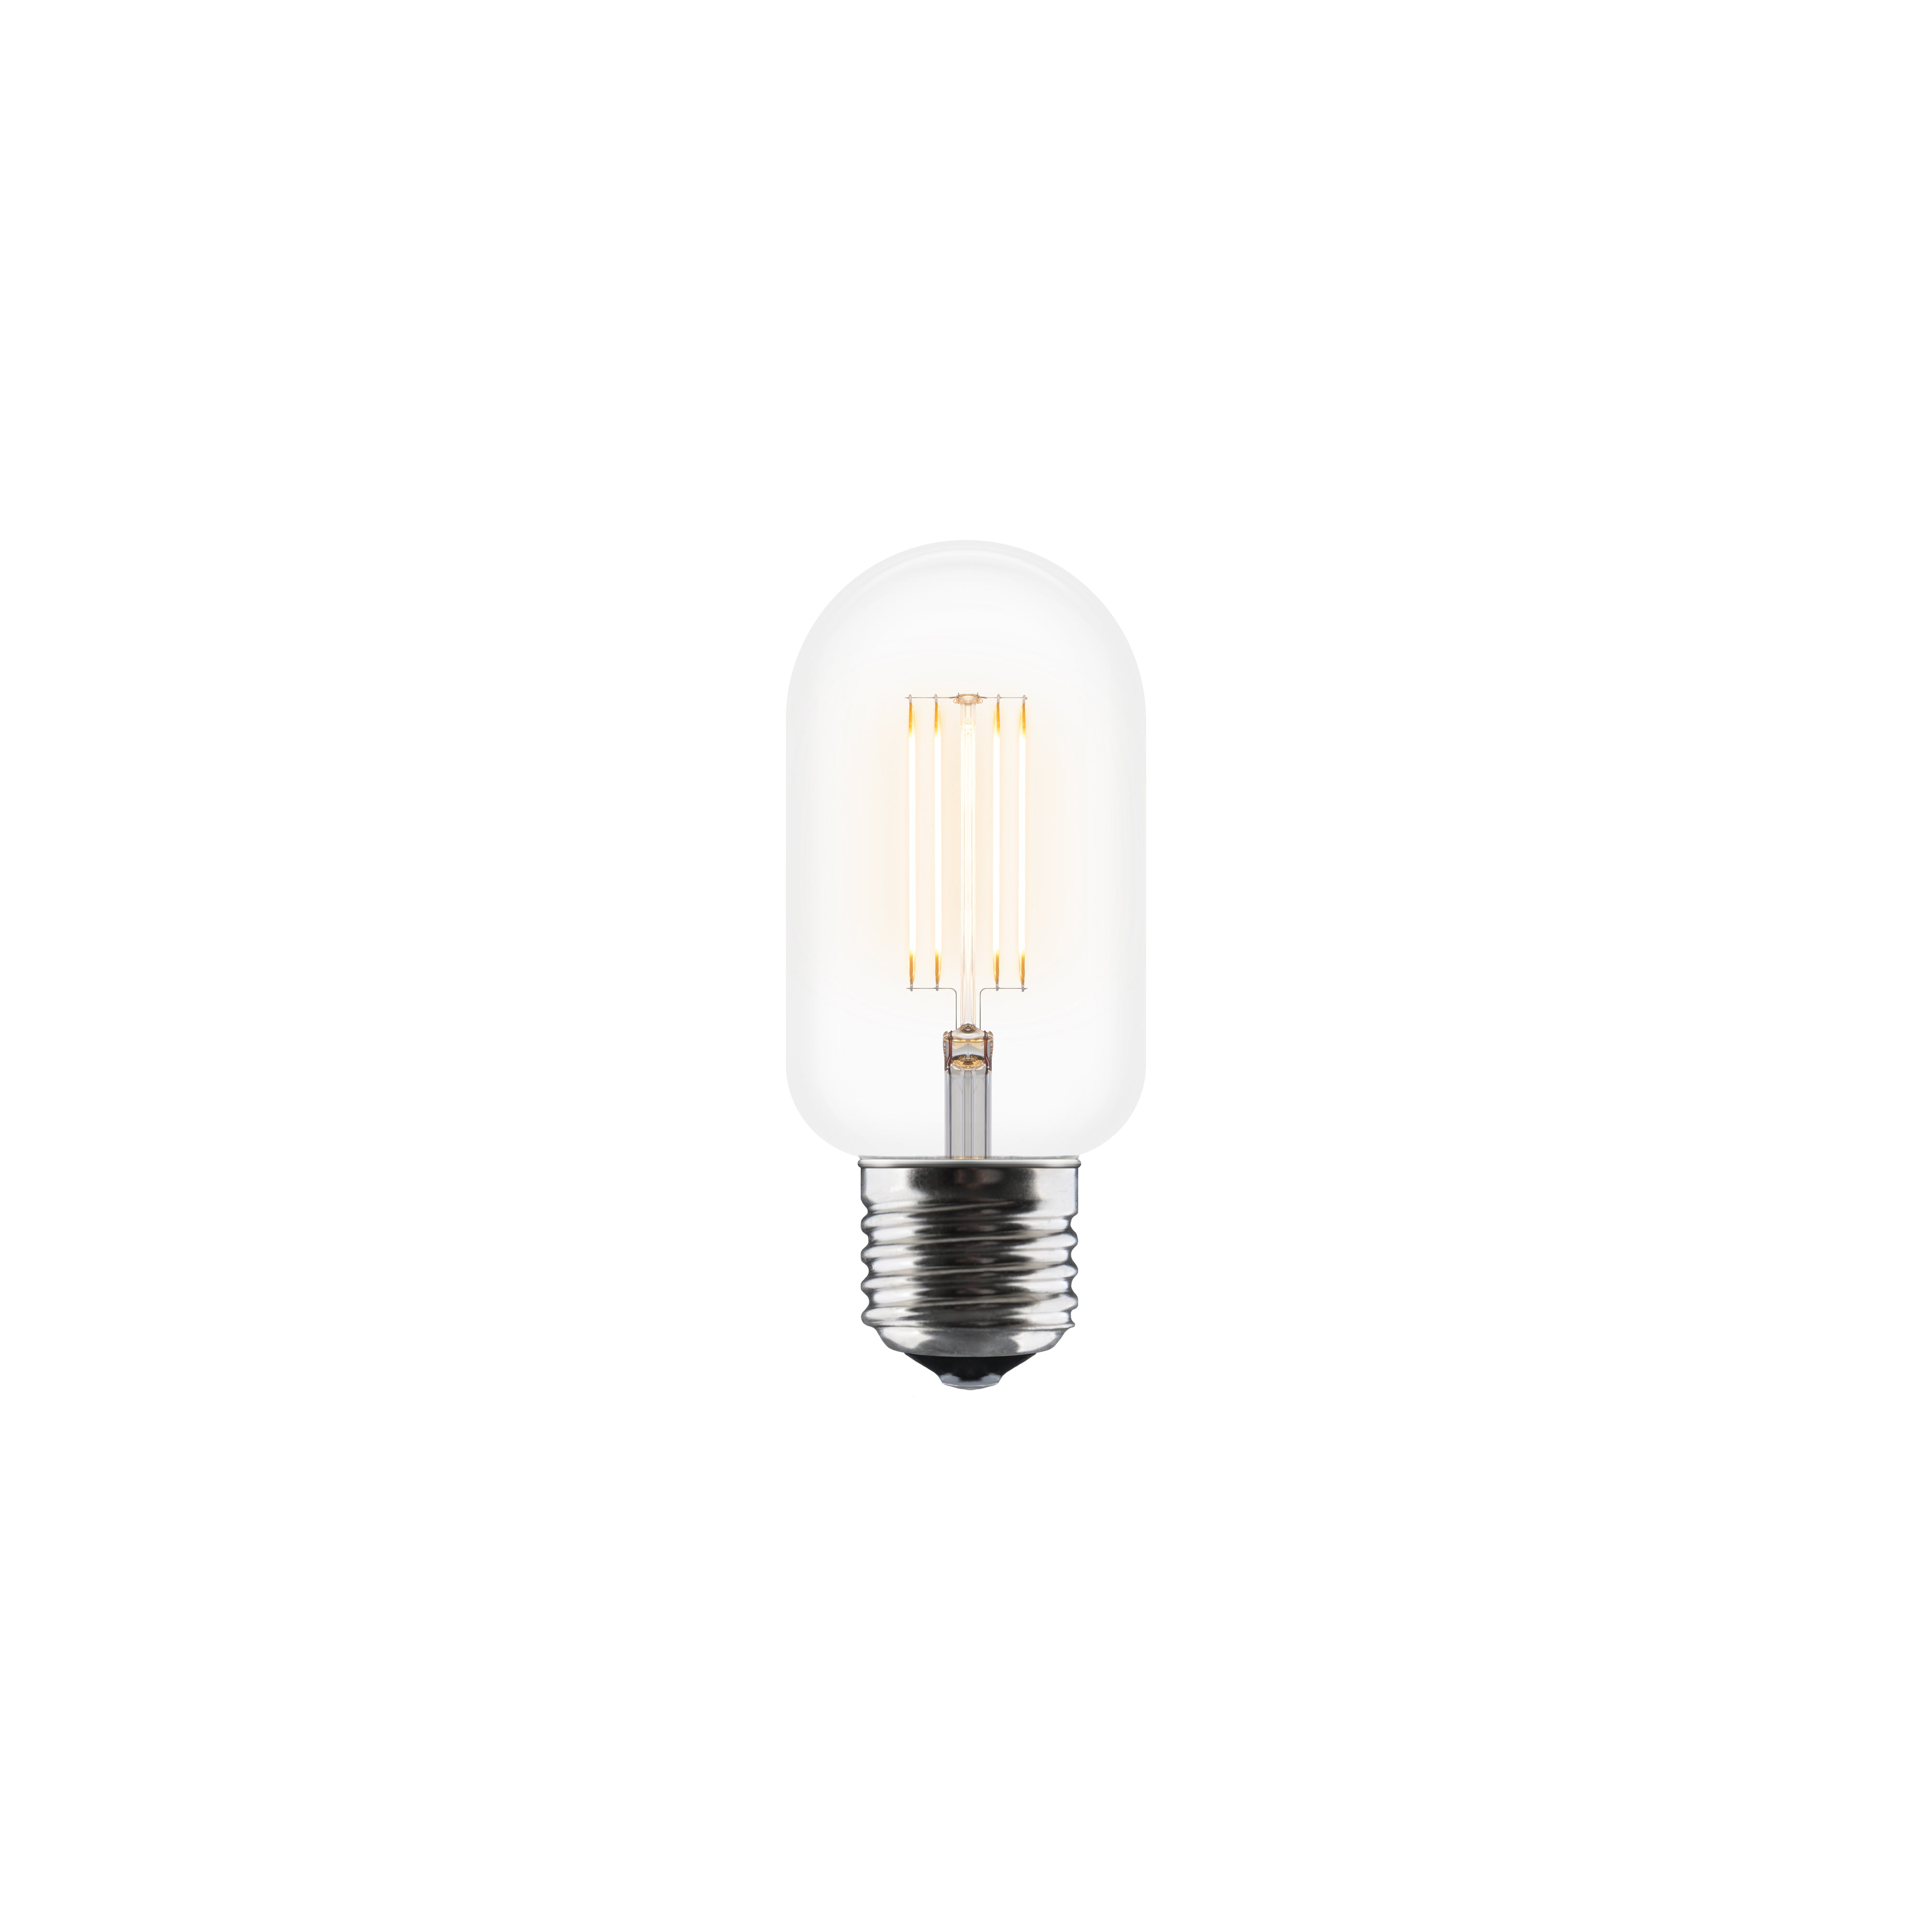 Idea LED Bulb Series: 1.5 W